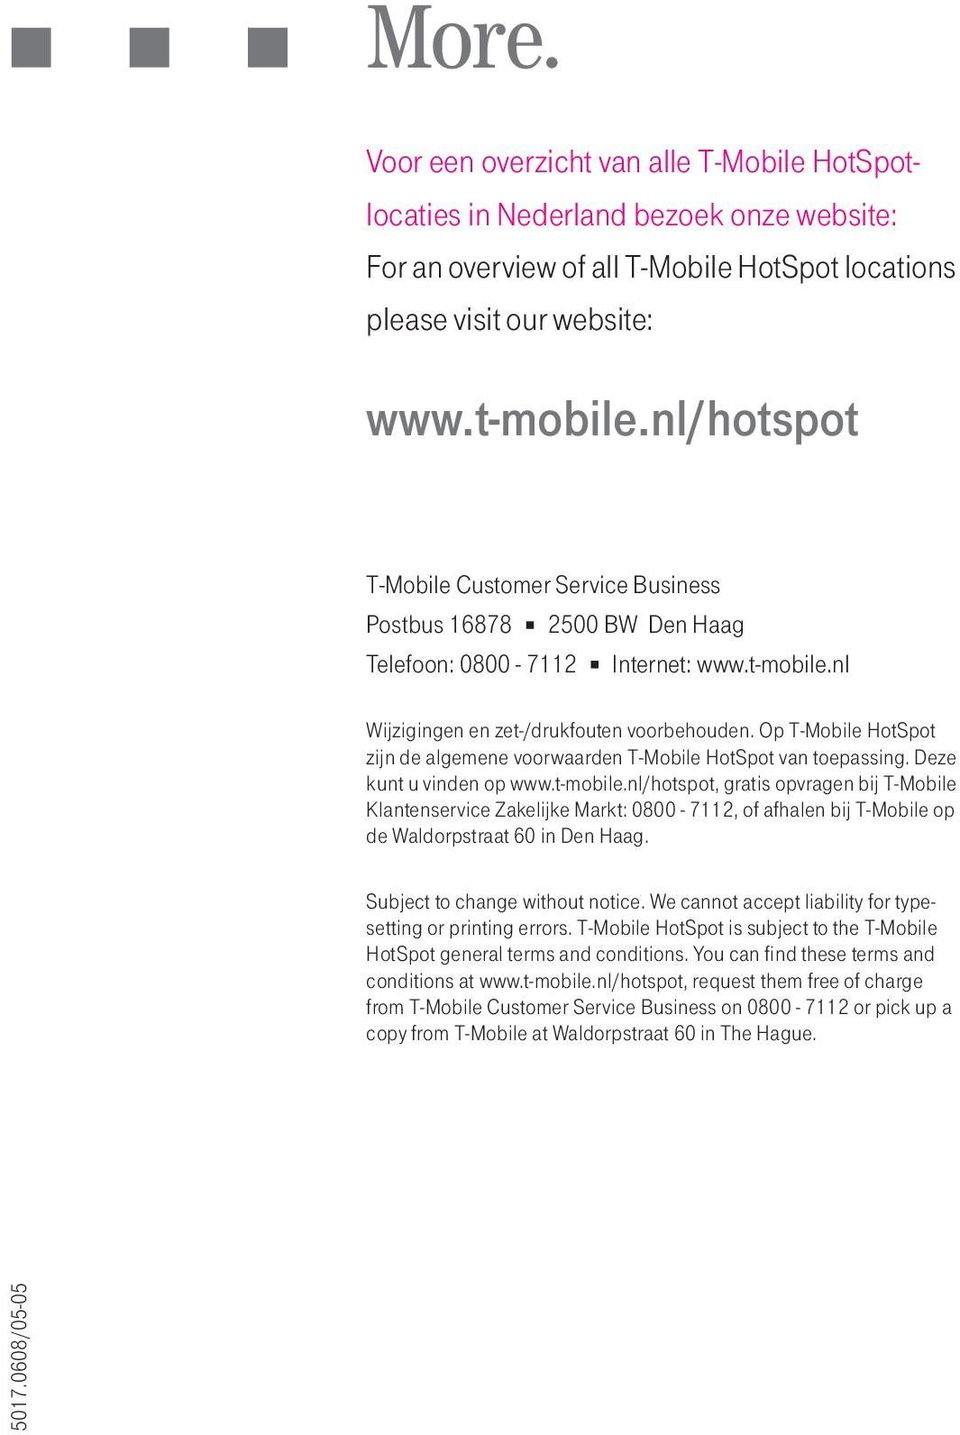 Op T-Mobile HotSpot zijn de algemene voorwaarden T-Mobile HotSpot van toepassing. Deze kunt u vinden op www.t-mobile.